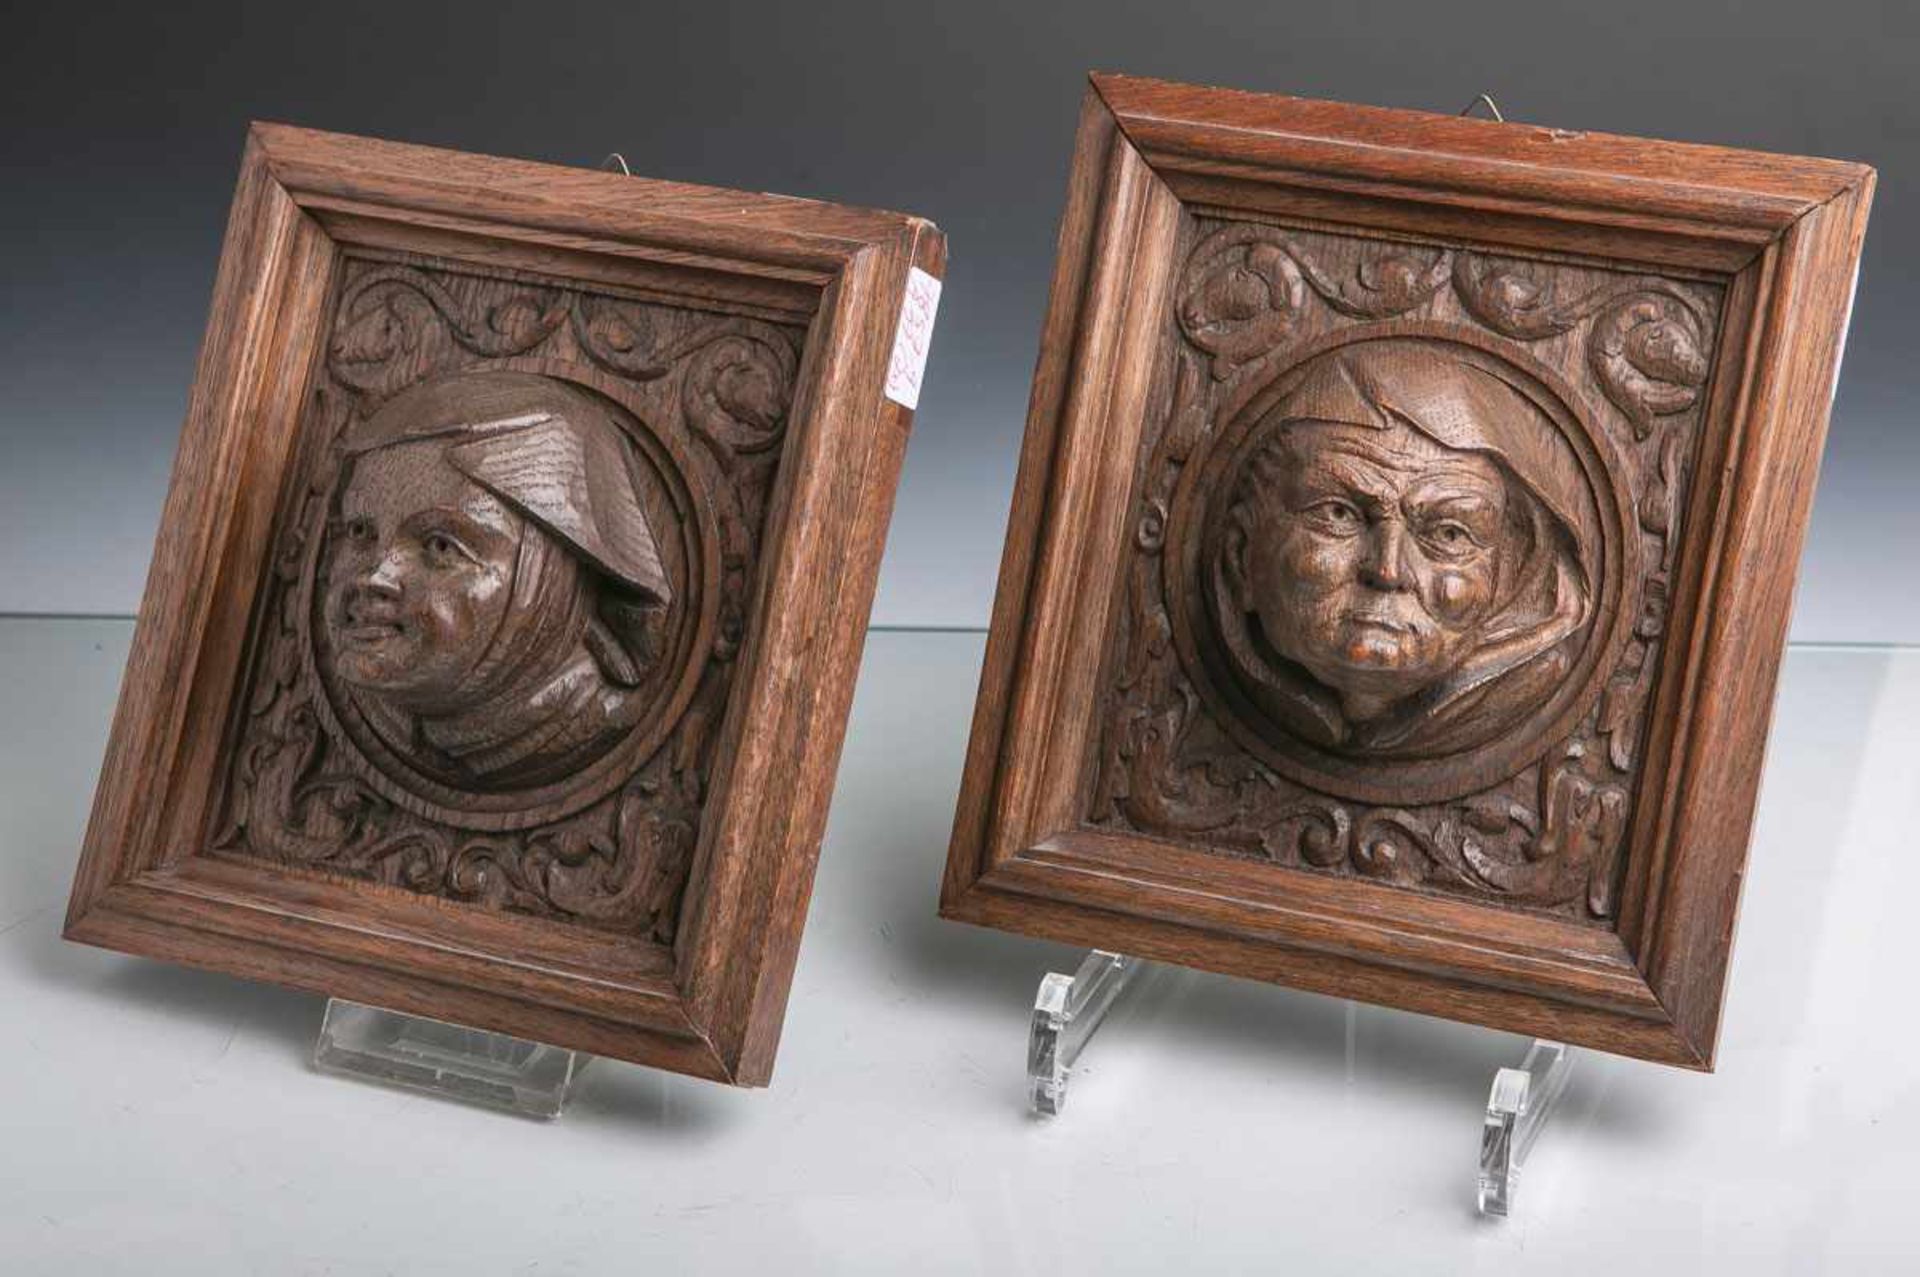 Unbekannter Künstler (wohl 19./20. Jahrhundert), zwei Holzschnitzarbeiten aus Eiche,<